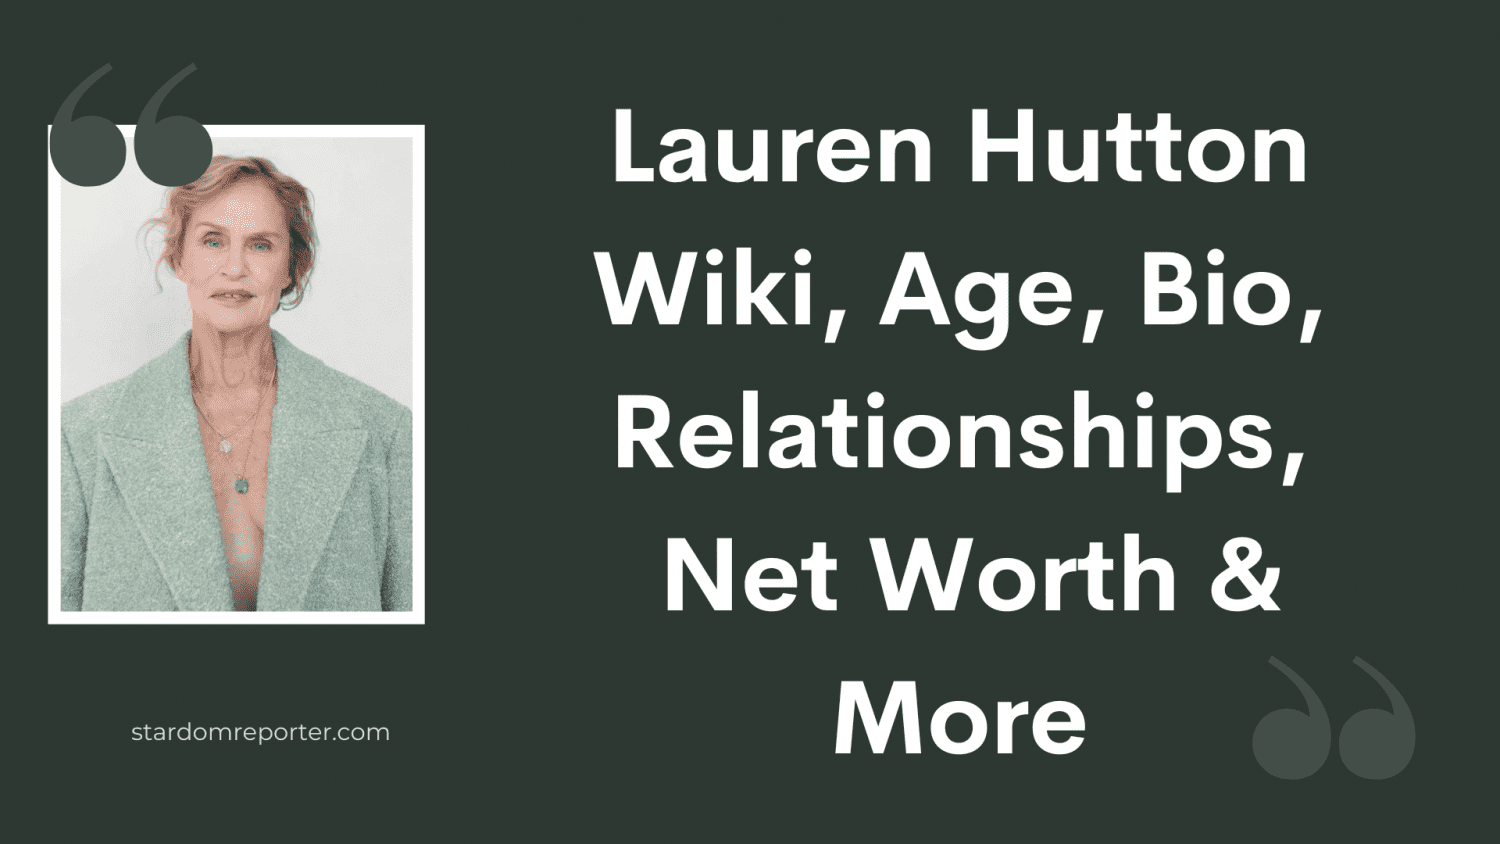 Lauren Hutton Wiki, Age, Bio, Relationships, Net Worth & More - 21